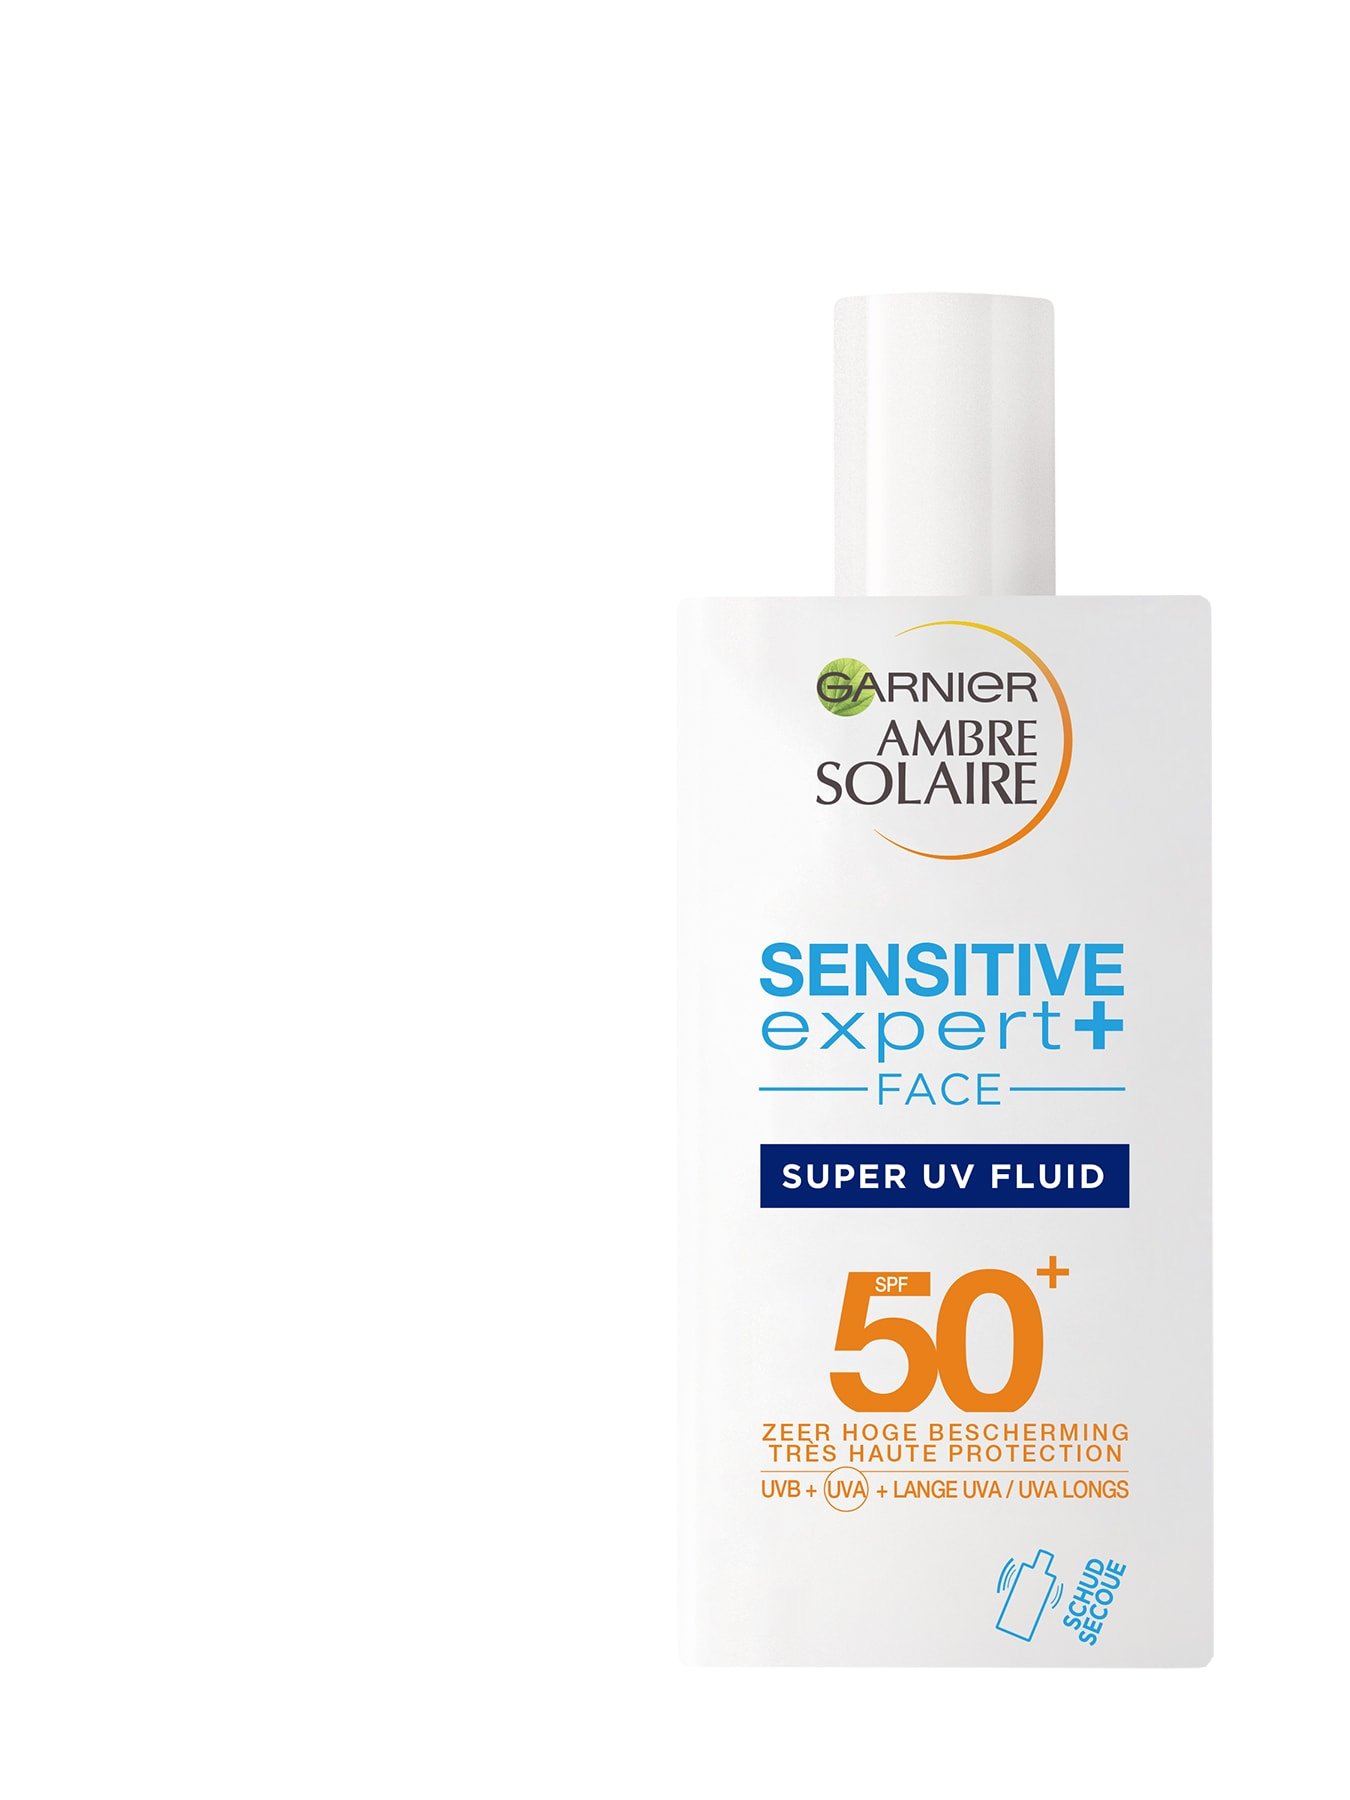 Voorkant verpakking Sensitive Expert+ Super UV Fluid SPF50+